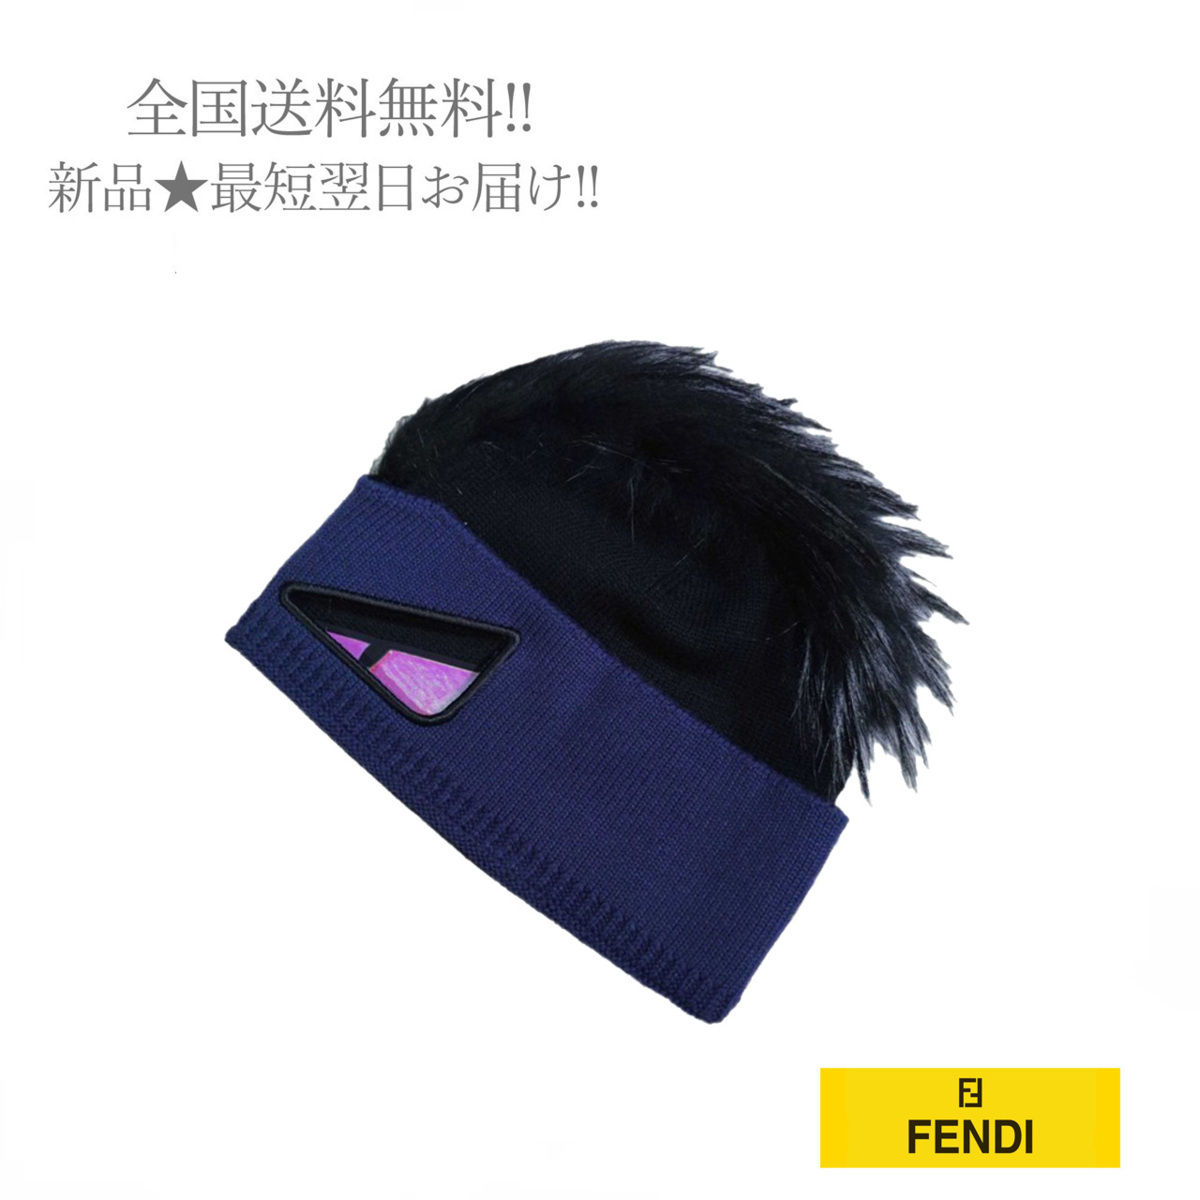 通販激安 E725 FENDI フェンディ ニット帽 お買い得モデル イタリア製 ネイビー バグズ リアルファー